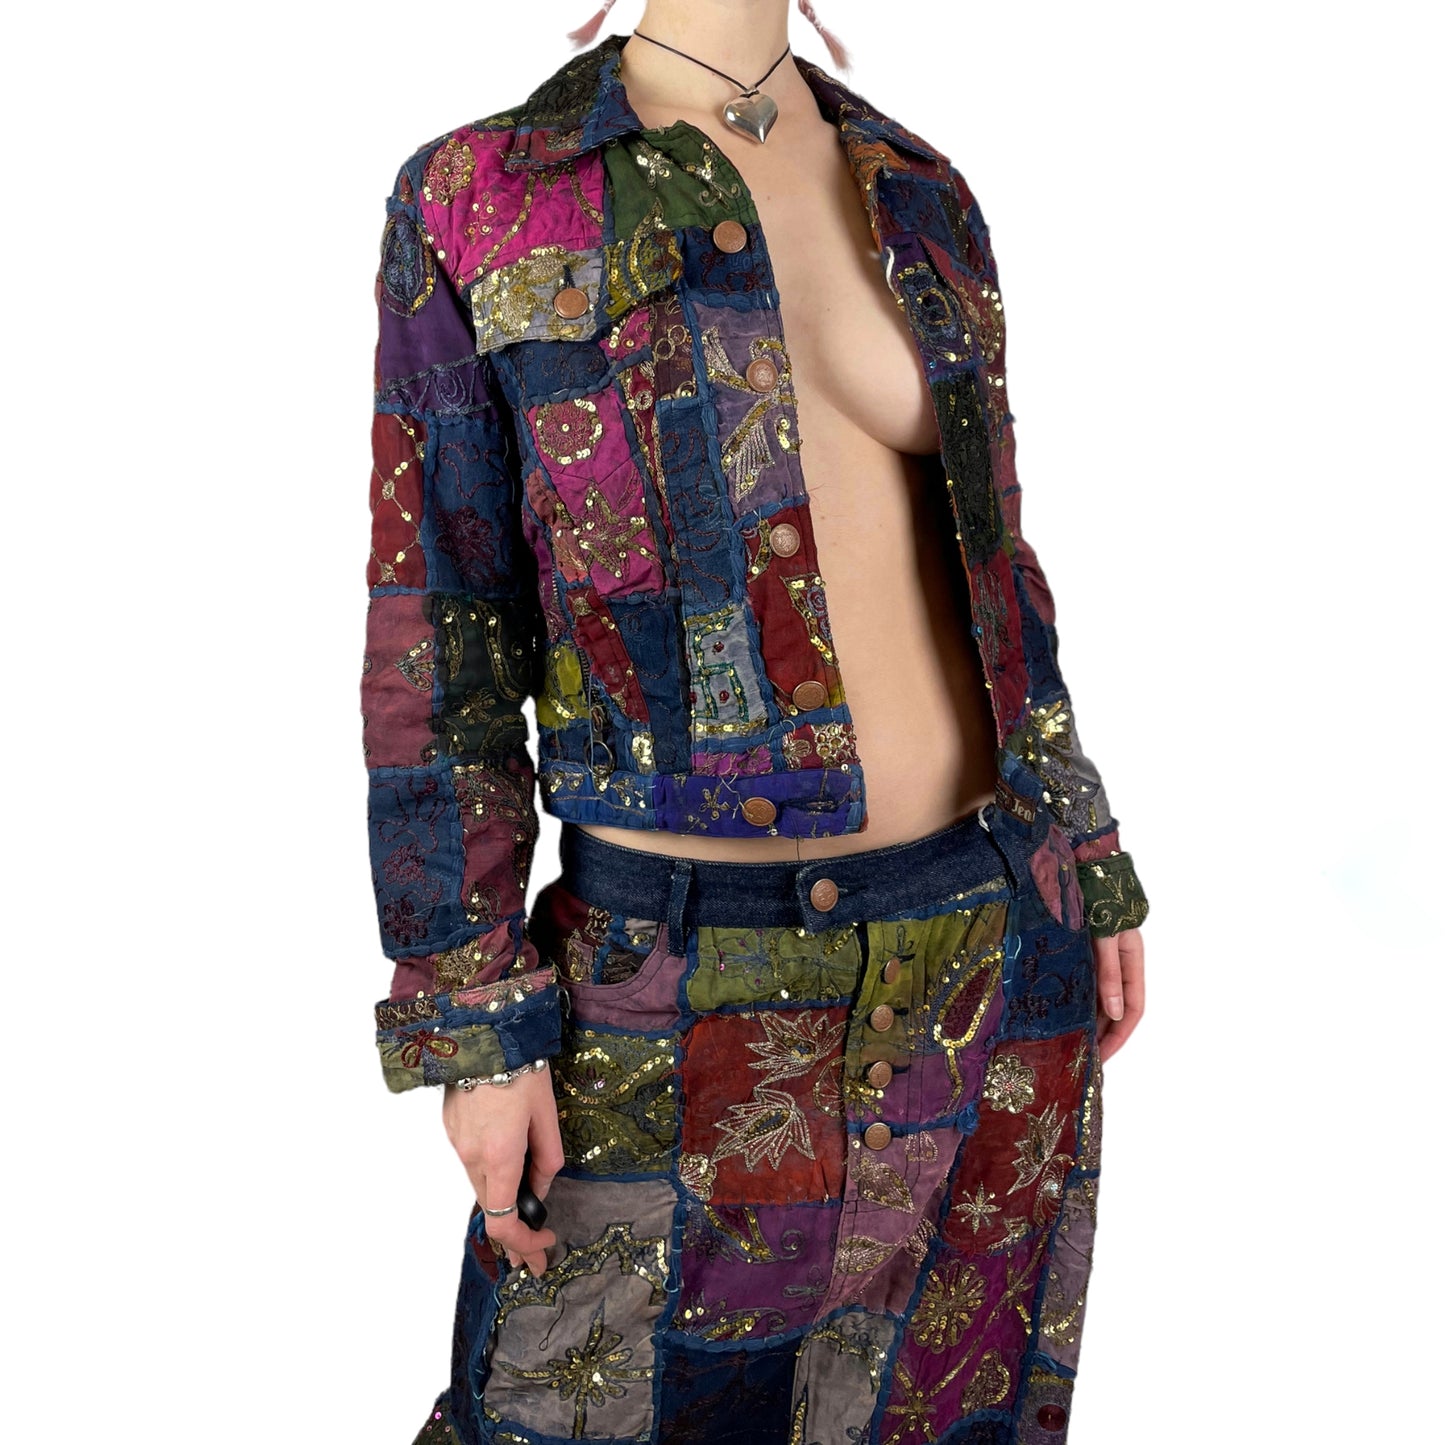 S/S 1999 Jean Paul Gaultier patchwork jacket